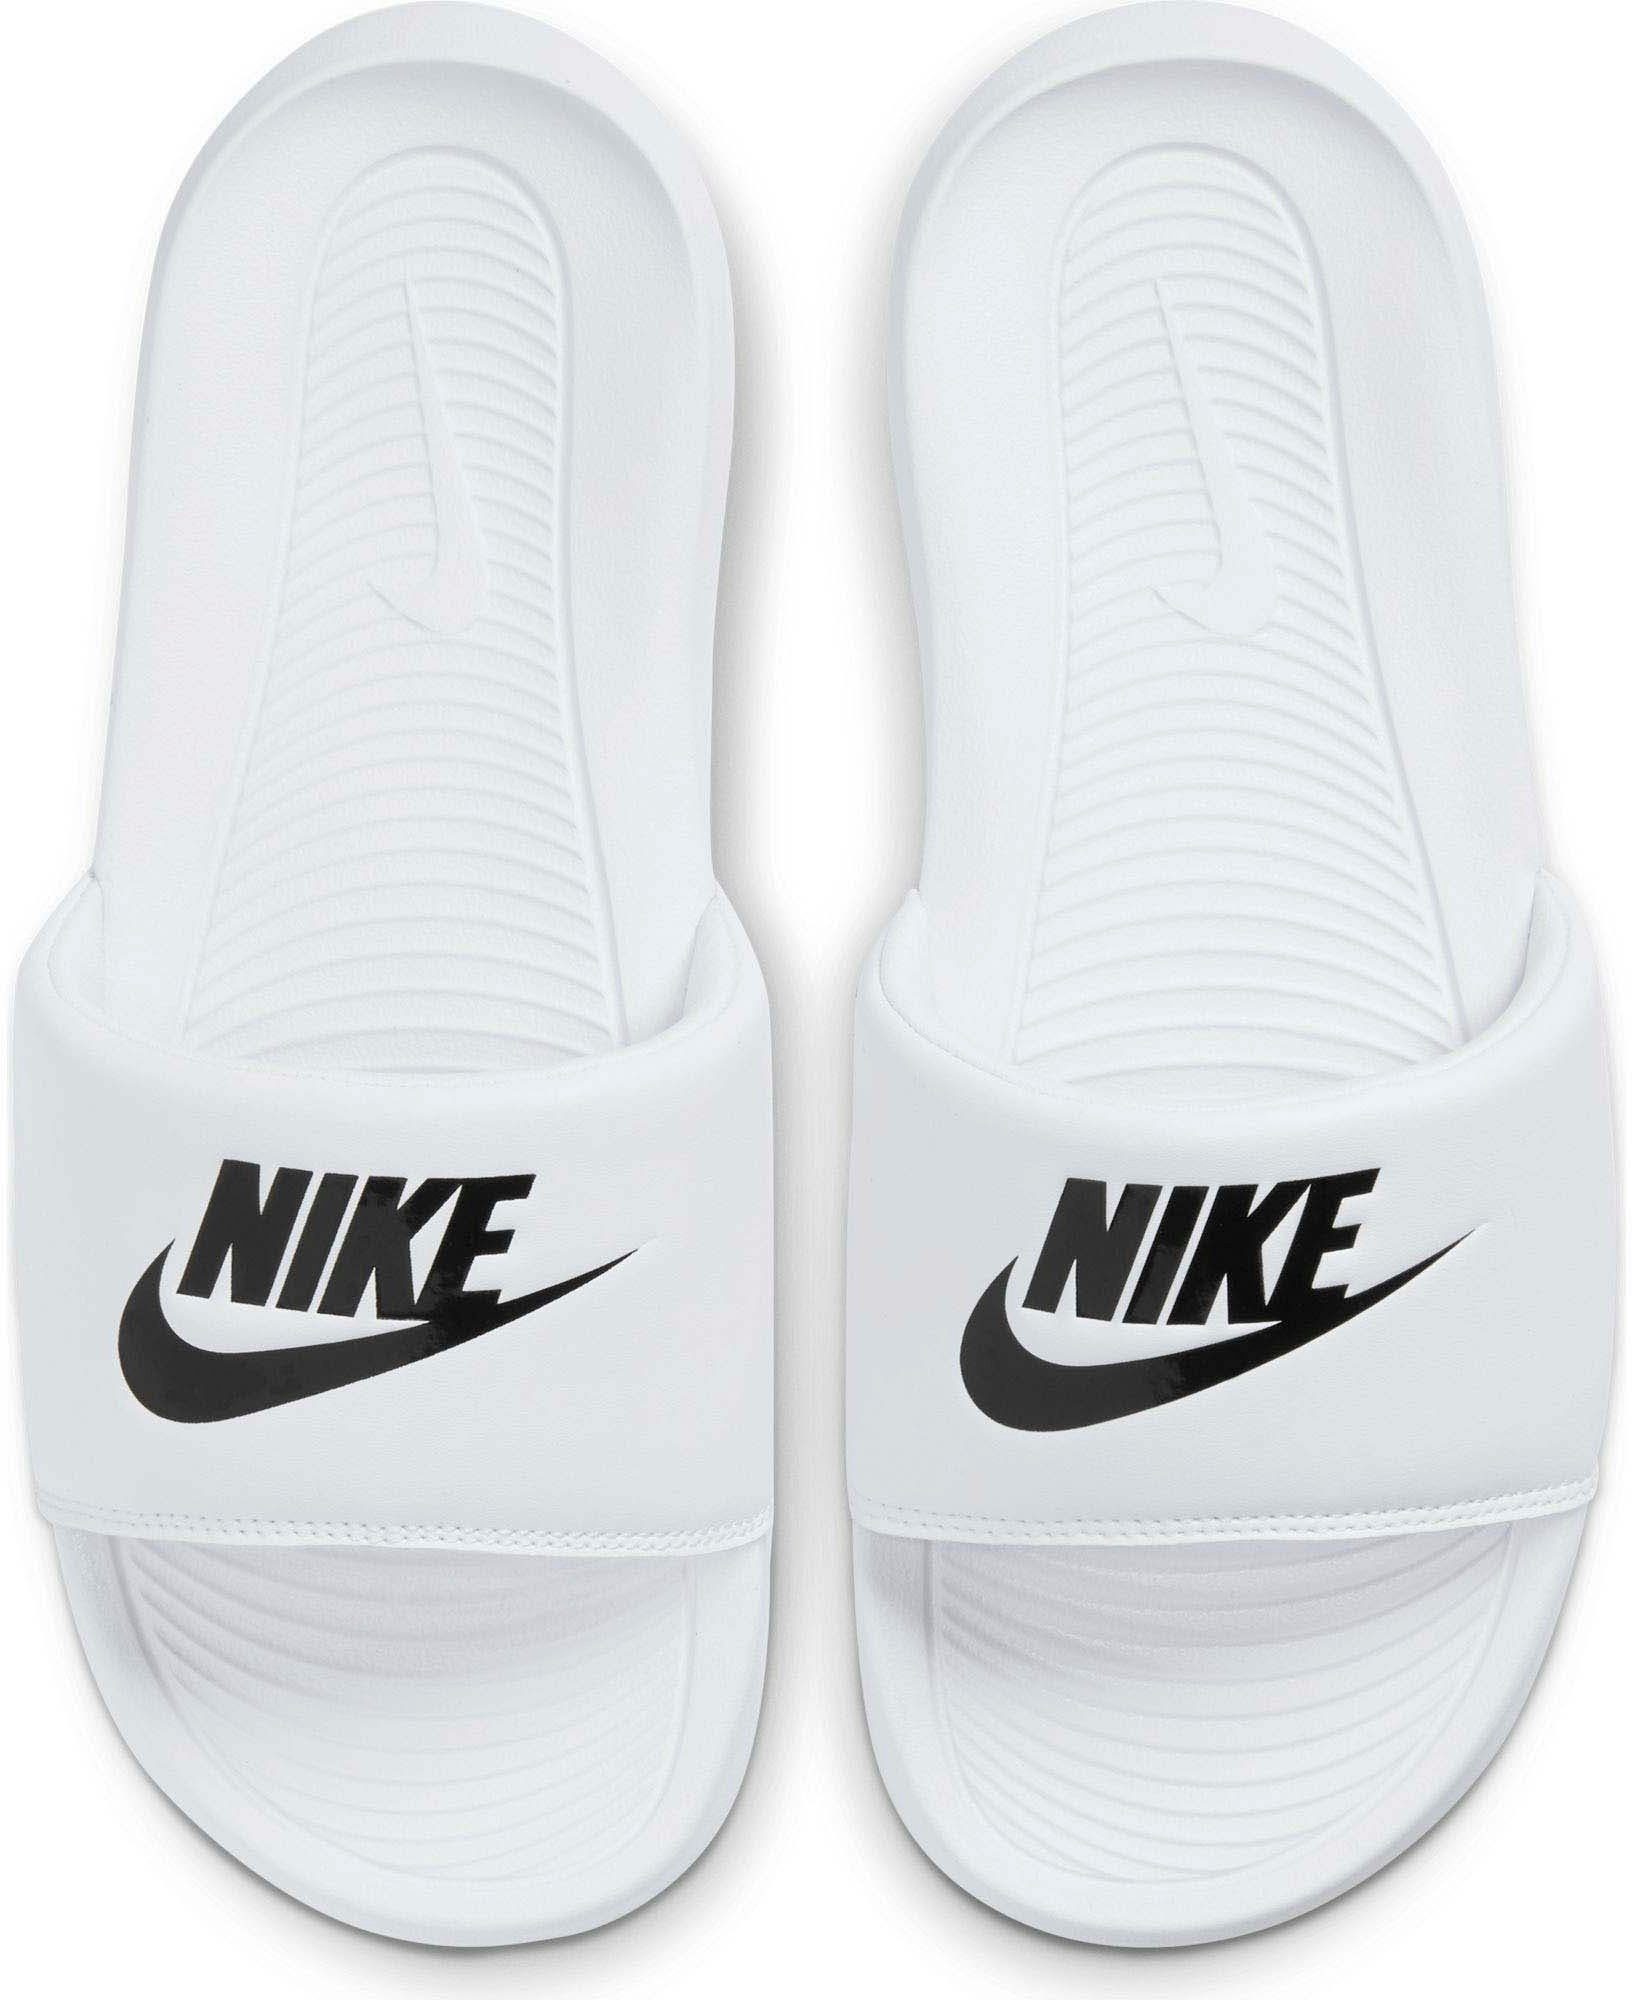 Nike Sandalen online kaufen | OTTO